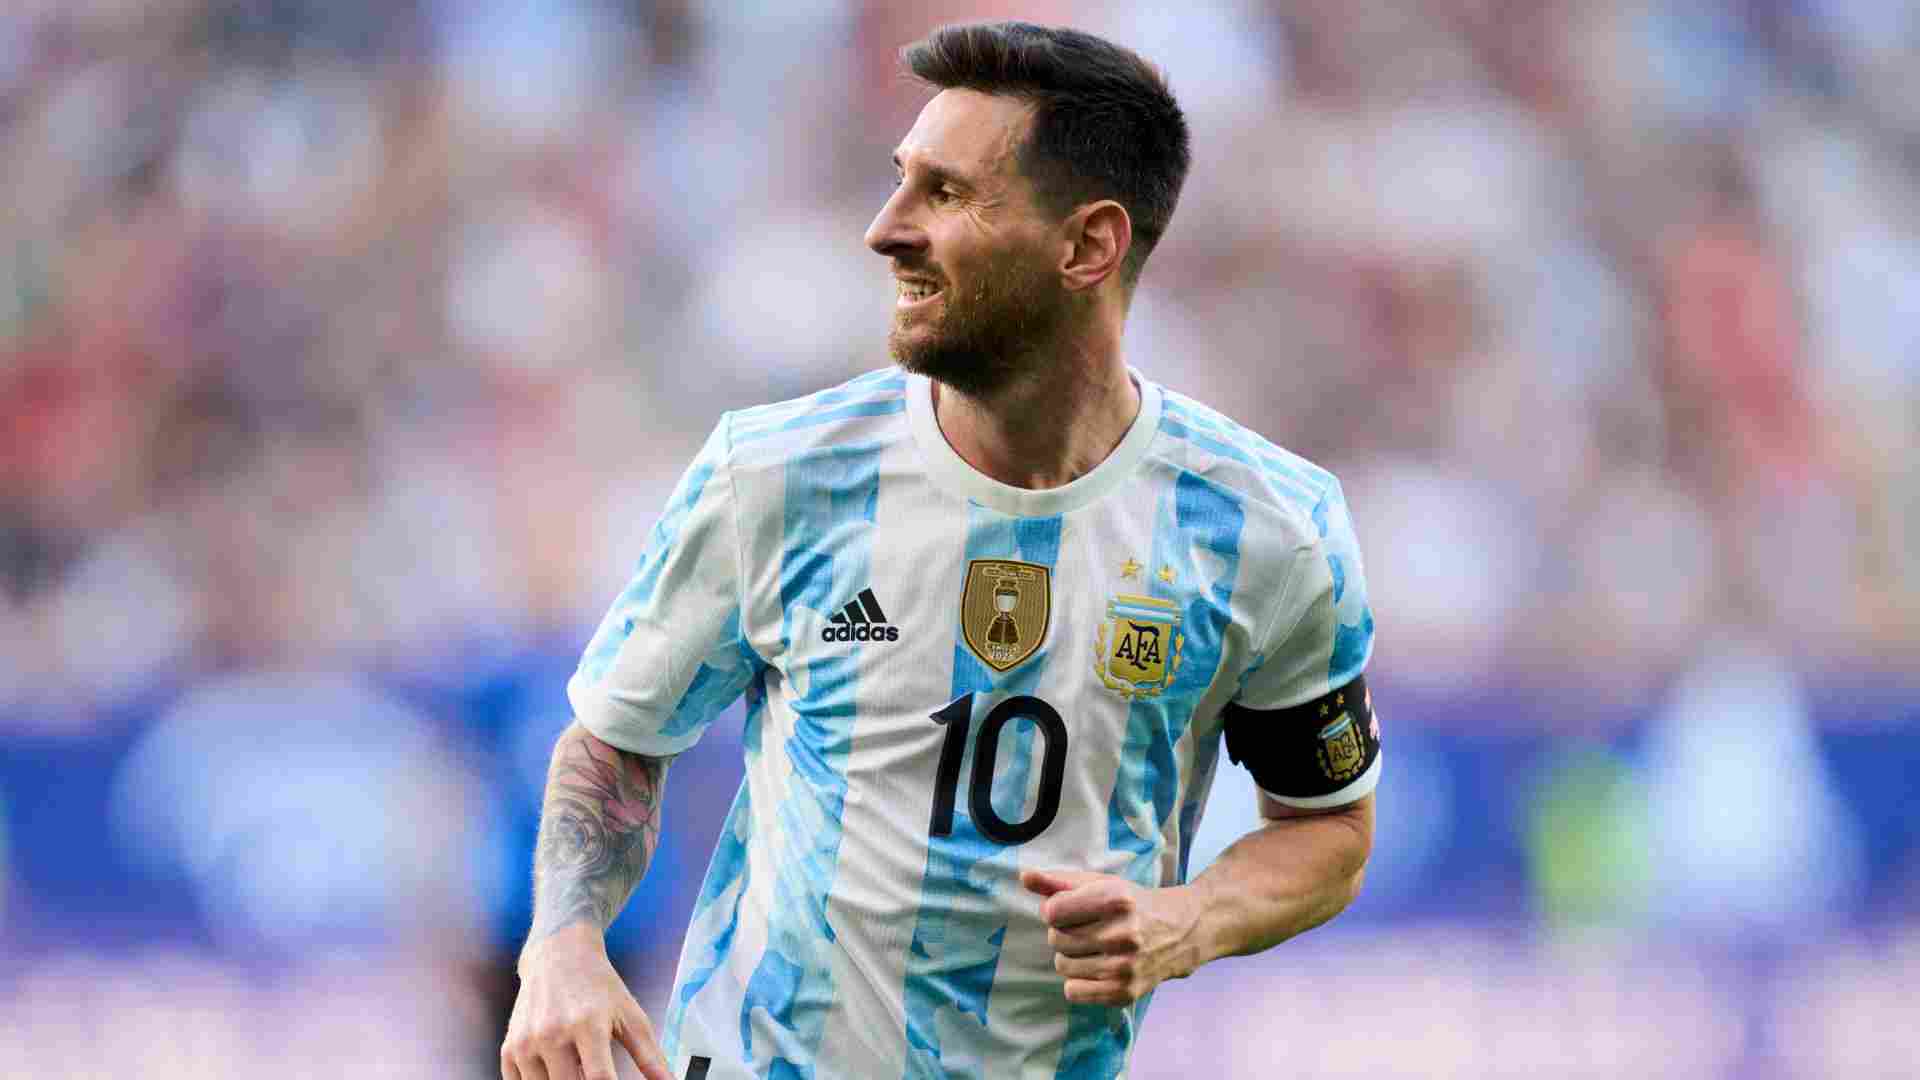 Món ăn bắt buộc phải có của Messi tại World Cup 2022 - 2